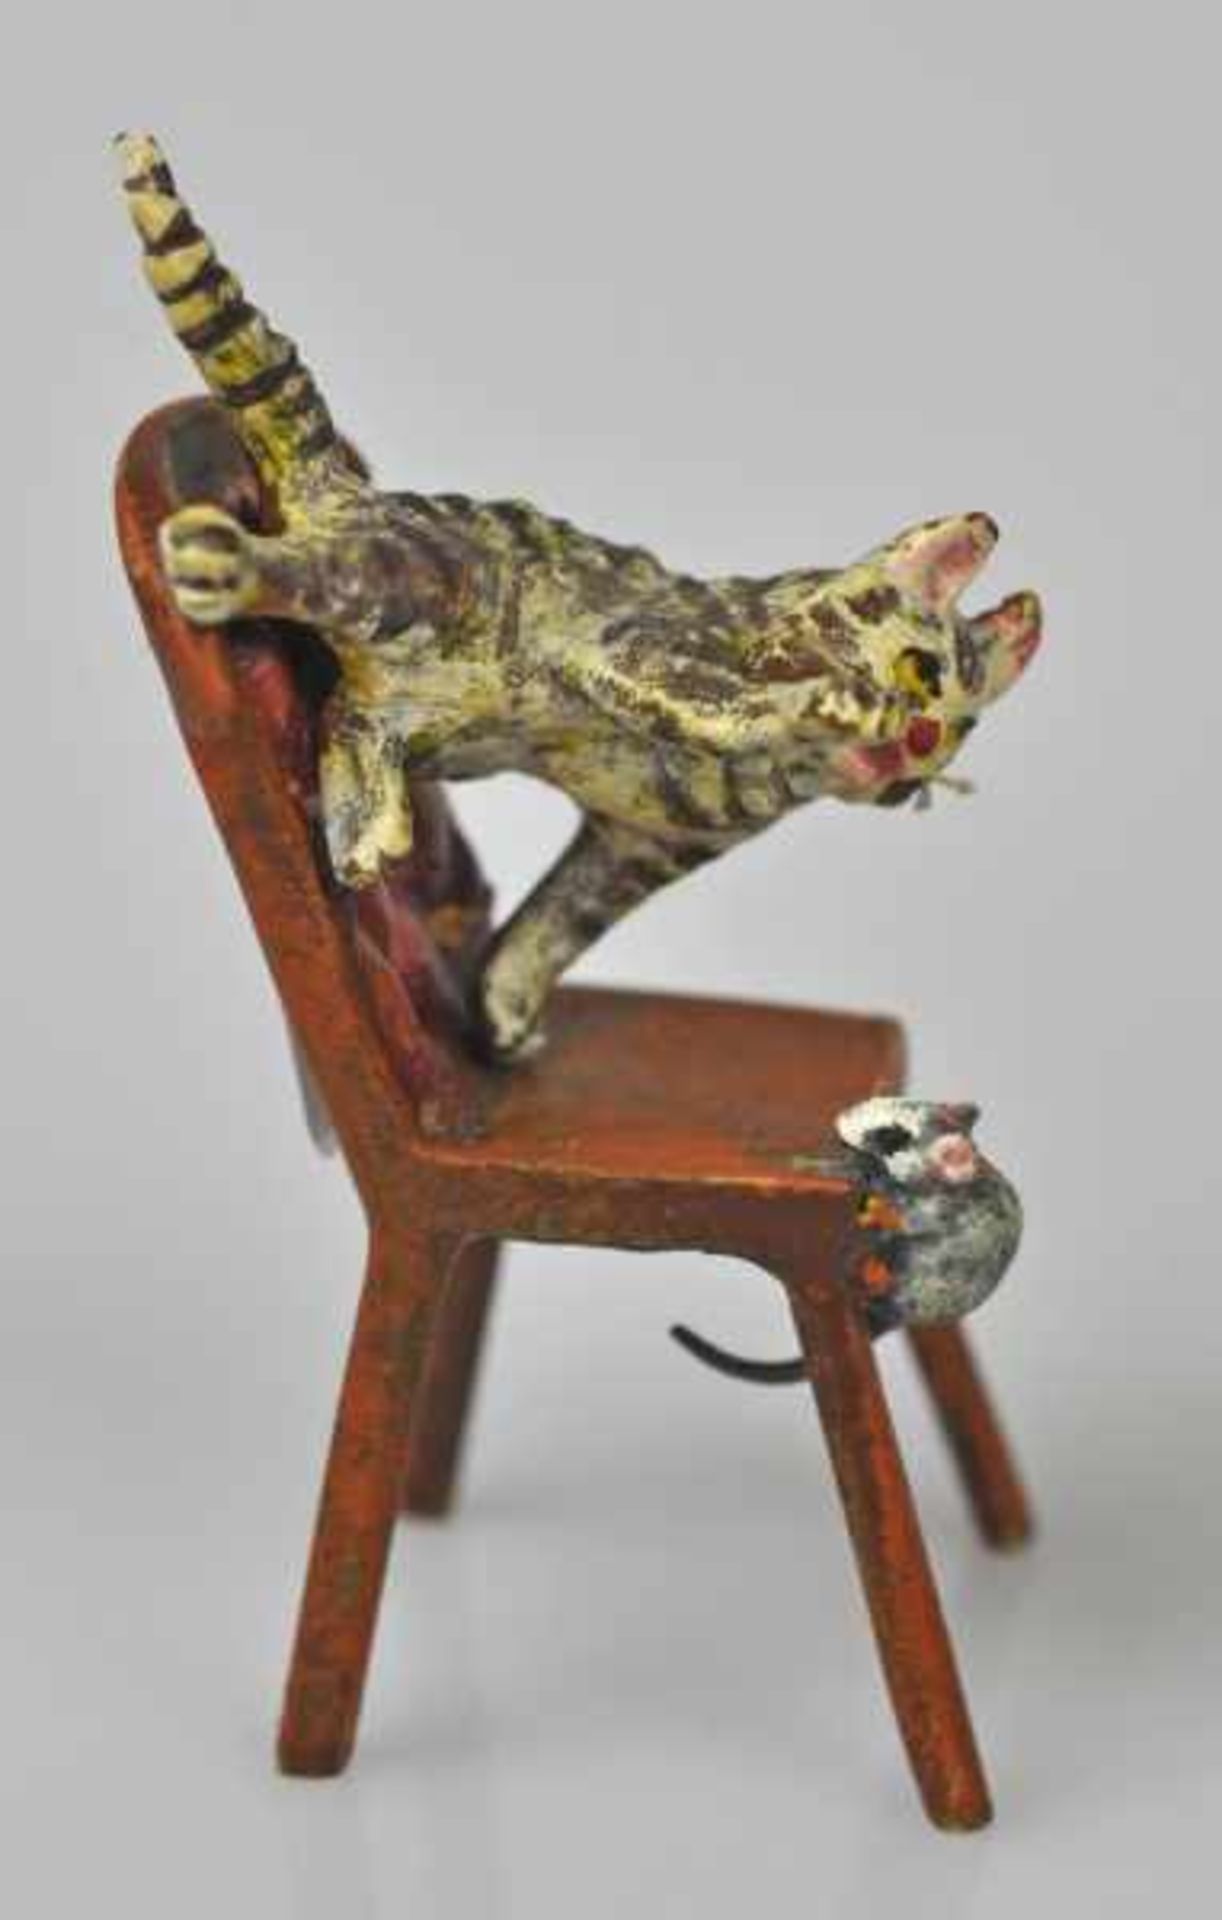 KATZE eine Maus jagend, auf Stuhl, Wiener Bronze, gemarkt u. bez. Bermann Wien, H 5cm - Image 4 of 5